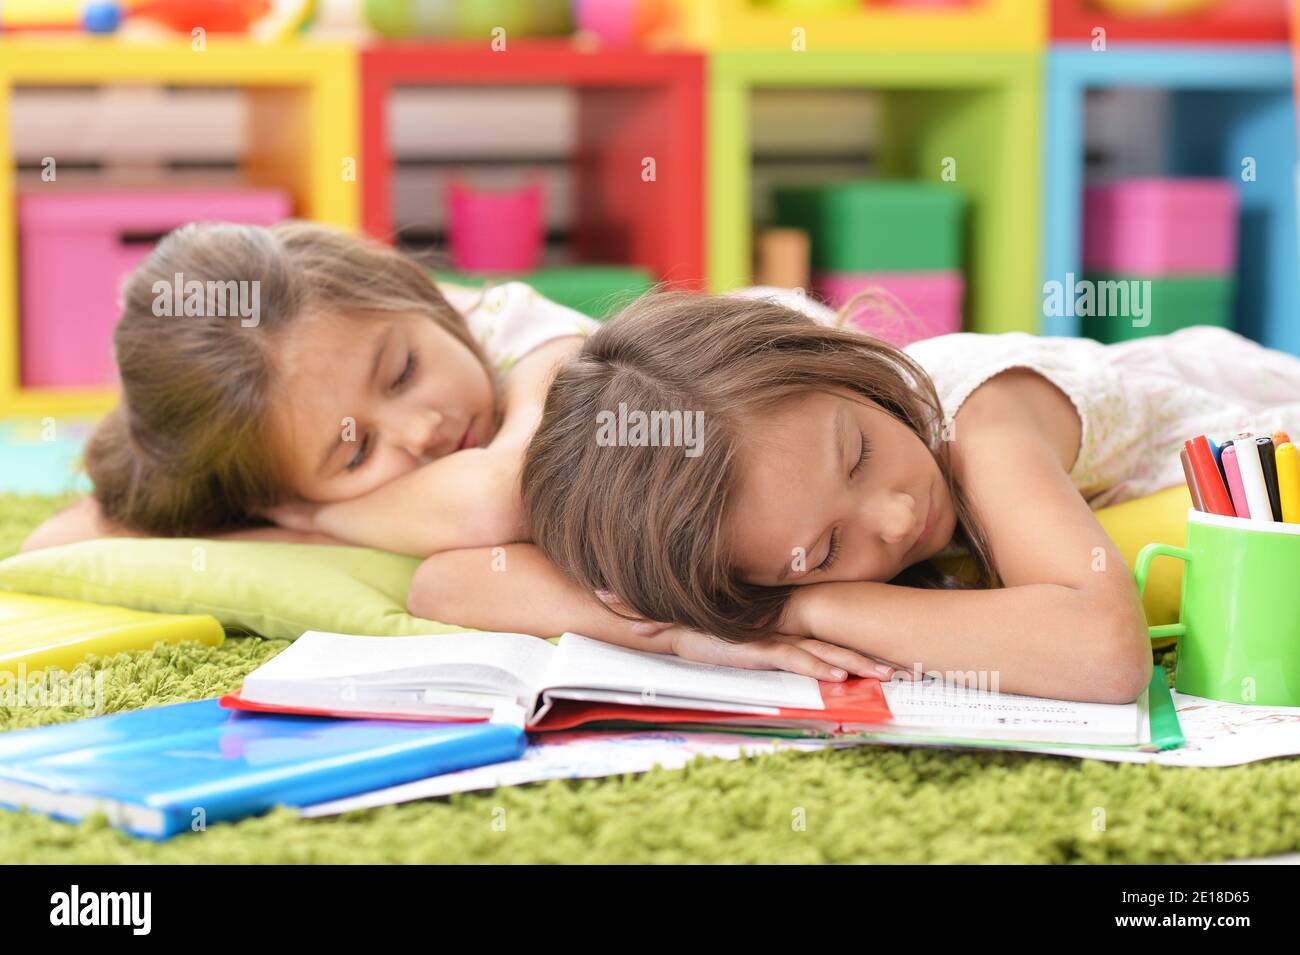 маленькие девочки спят порно рассказы фото 31